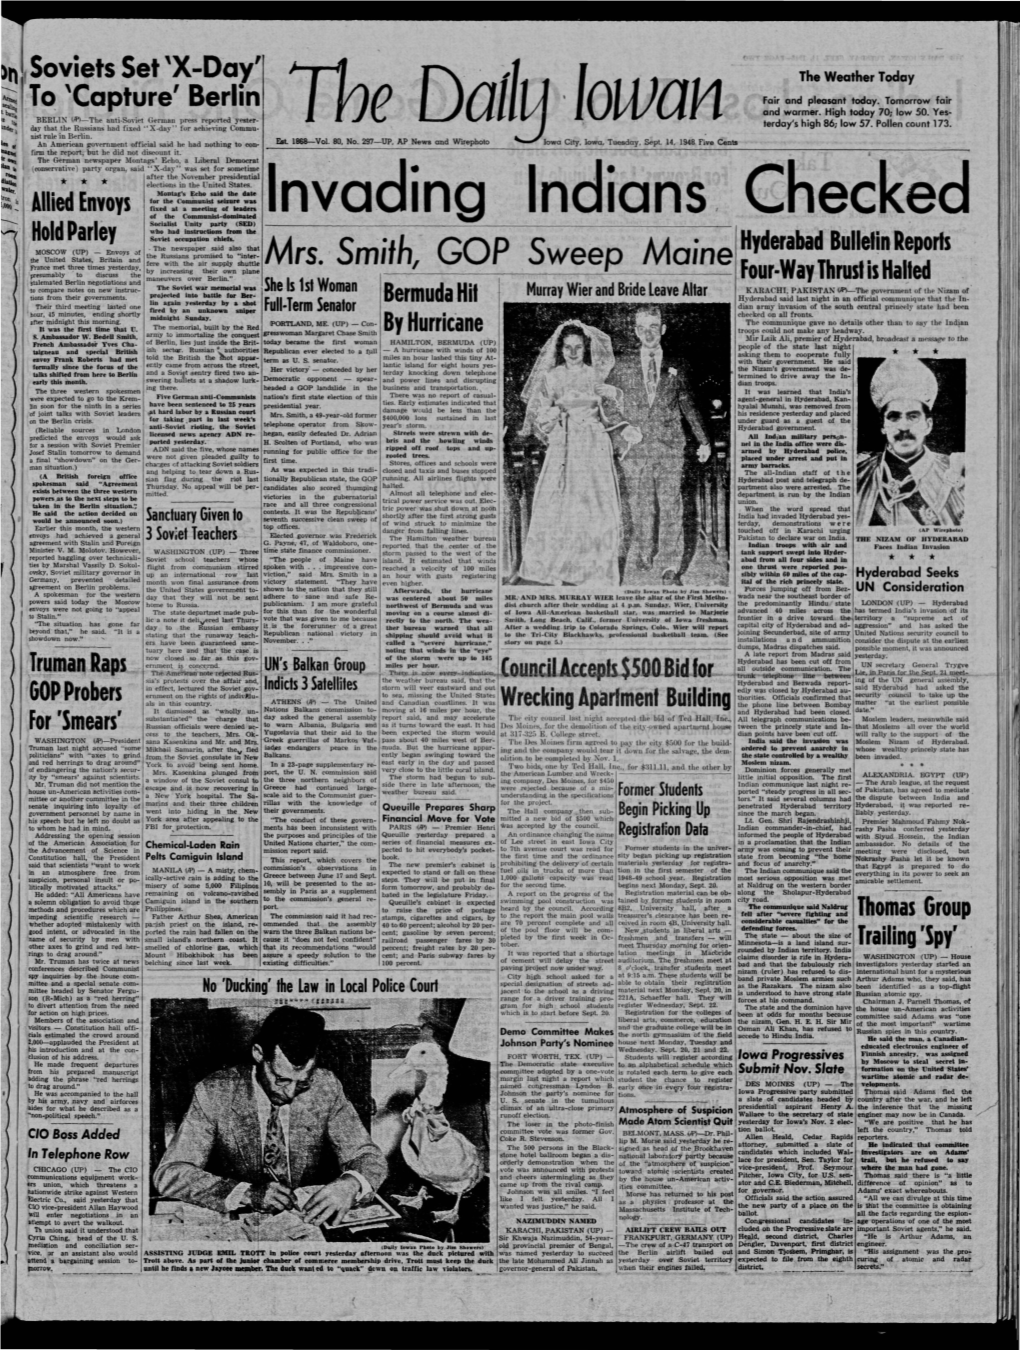 Daily Iowan (Iowa City, Iowa), 1948-09-14